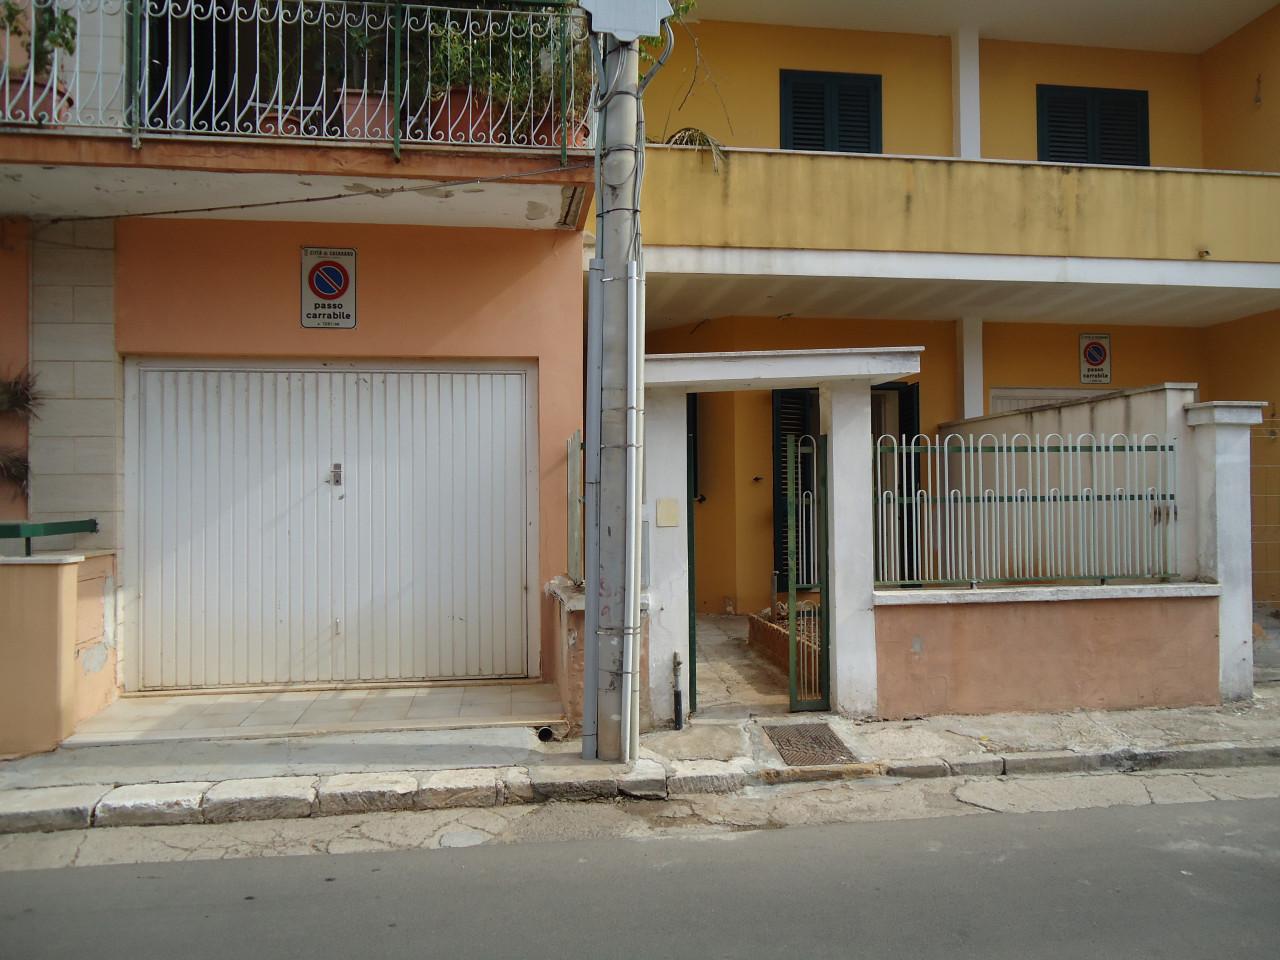 Appartamento in vendita a Casarano